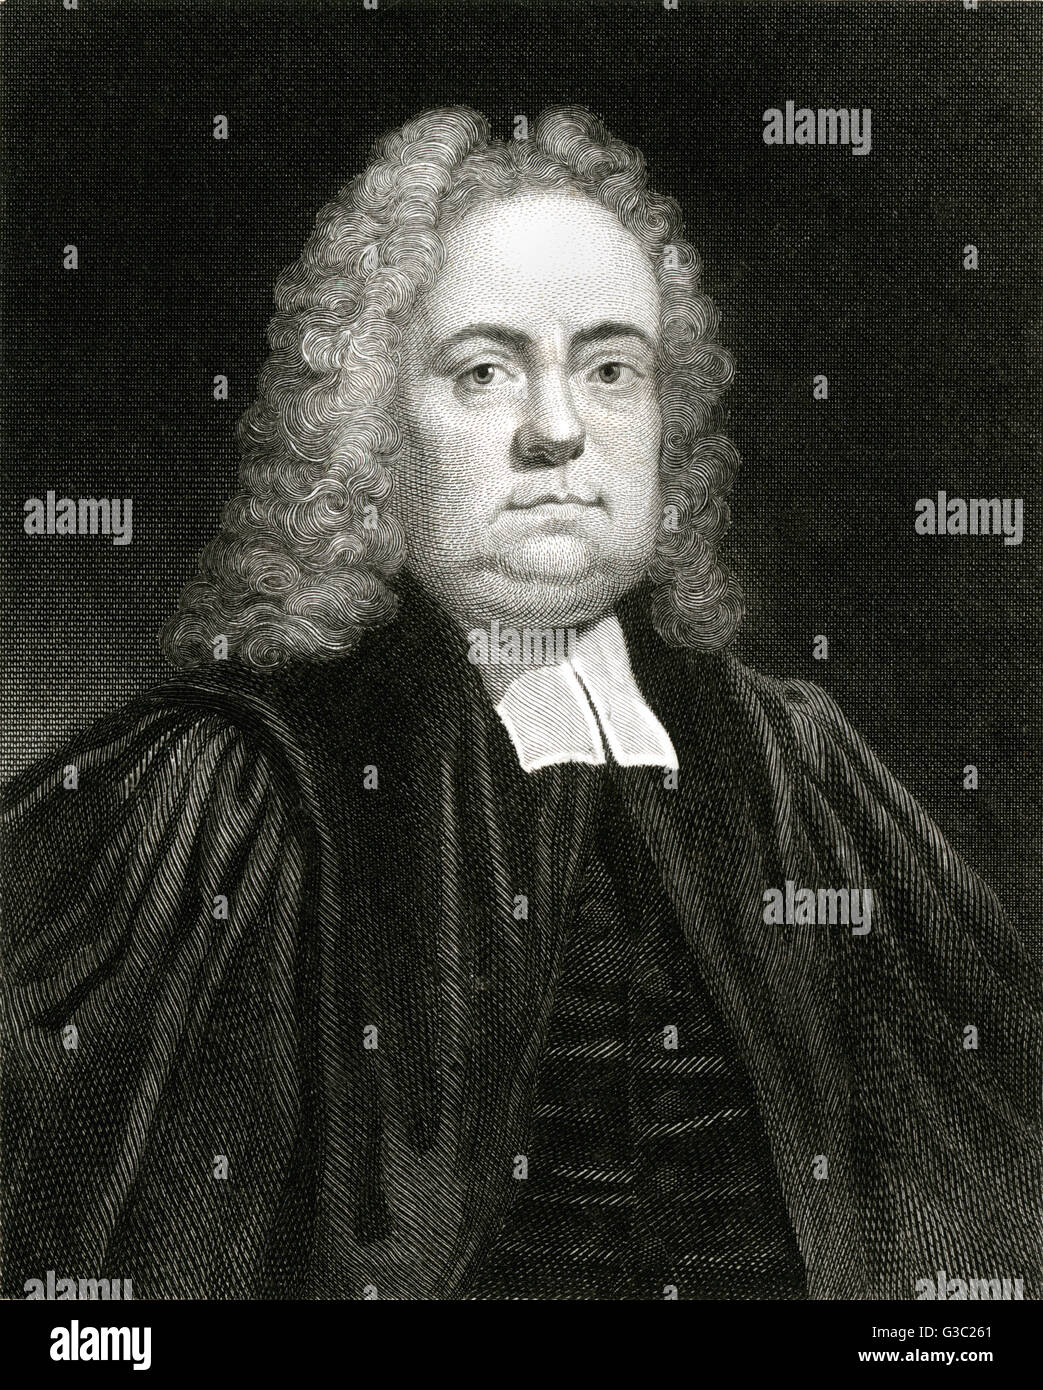 Matthew Henry (1662-1714) - englische Bibel Kommentator, Minister einer presbyterianischen Gemeinde in Chester und Schriftsteller. Auch bekannt als Nonkonformist göttlichen und Theologe.     Datum: ca. 1700 Stockfoto